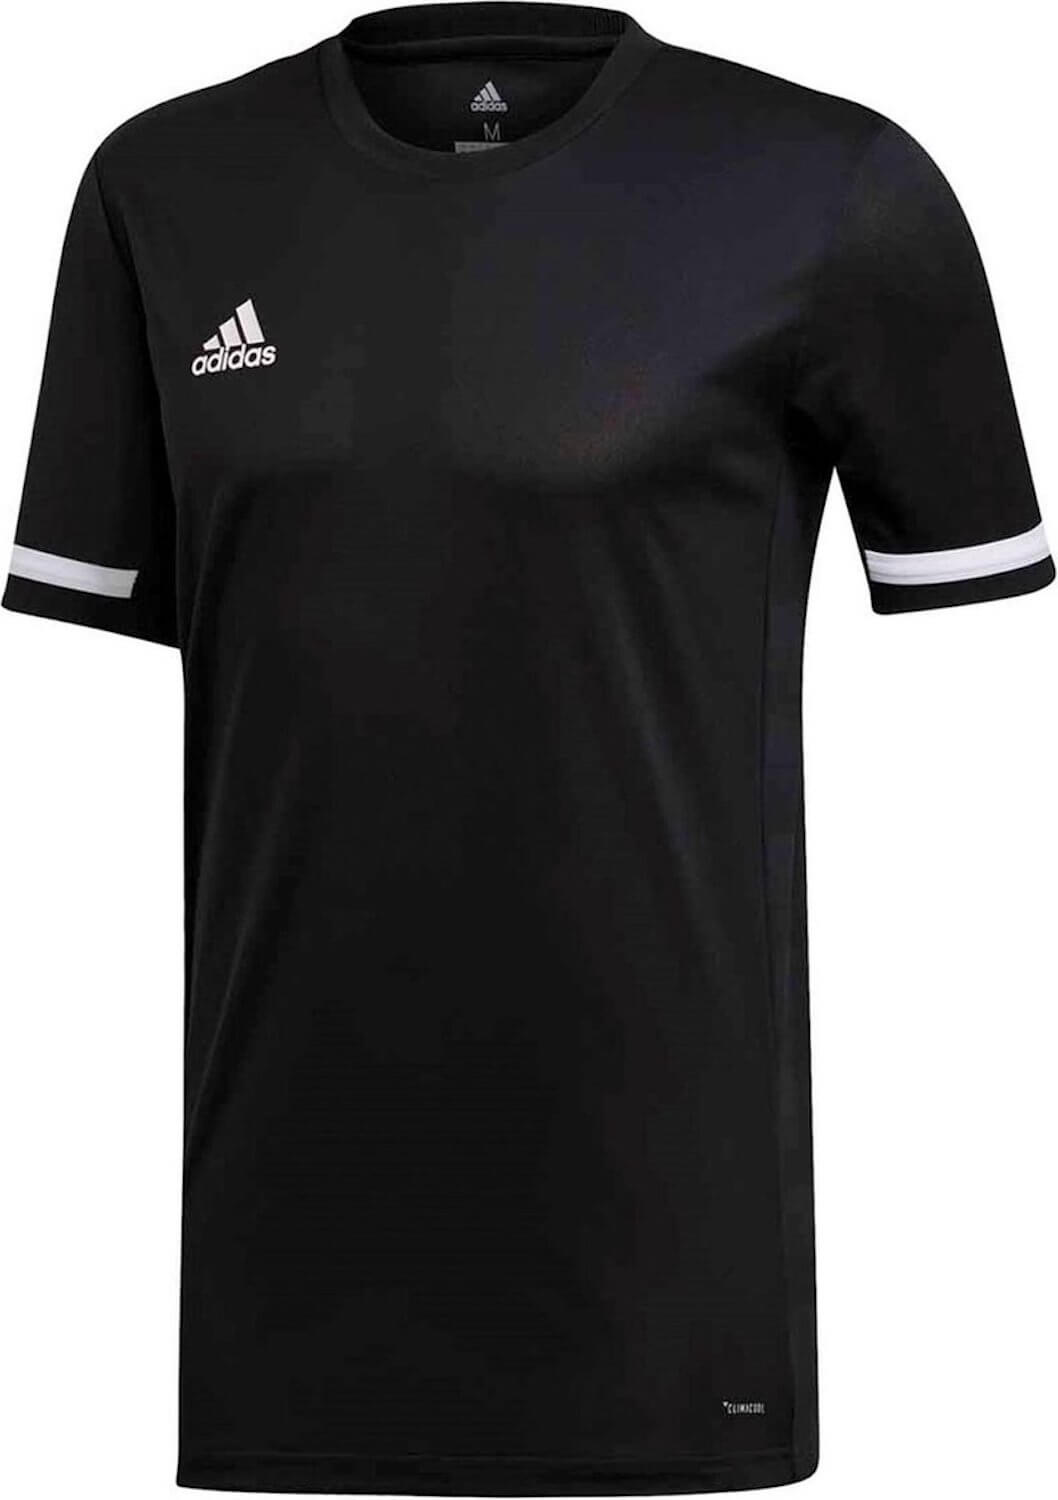 Adidas Herren T19 t-shirt für Sport Fußball Badminton tshirt Freizeit